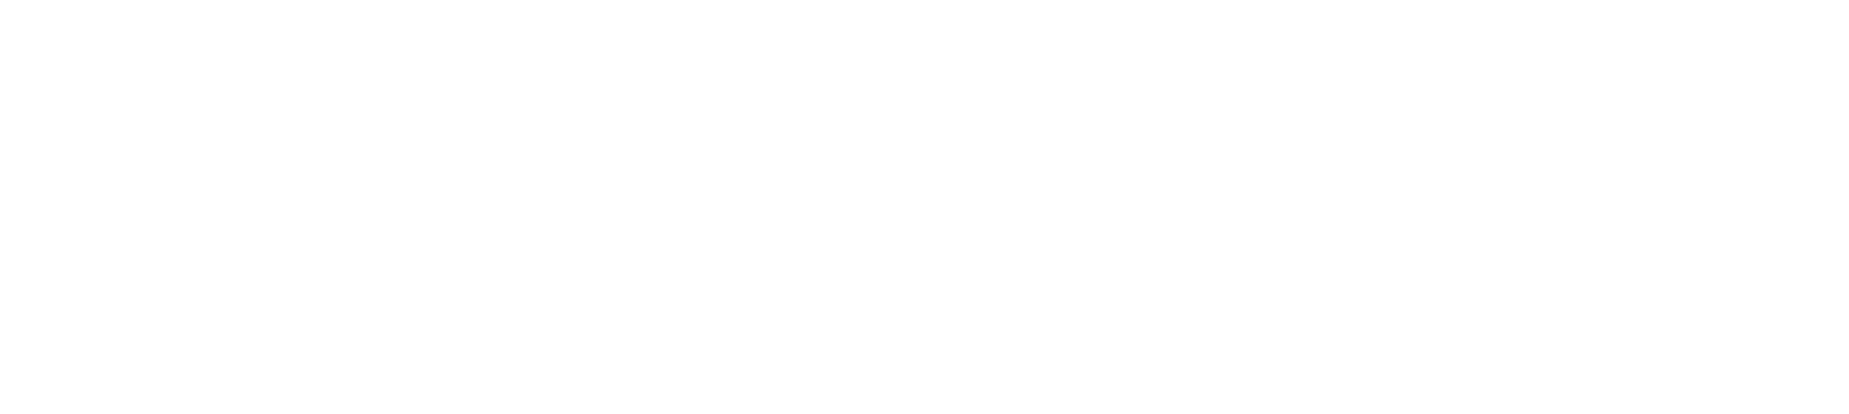 A belHall 